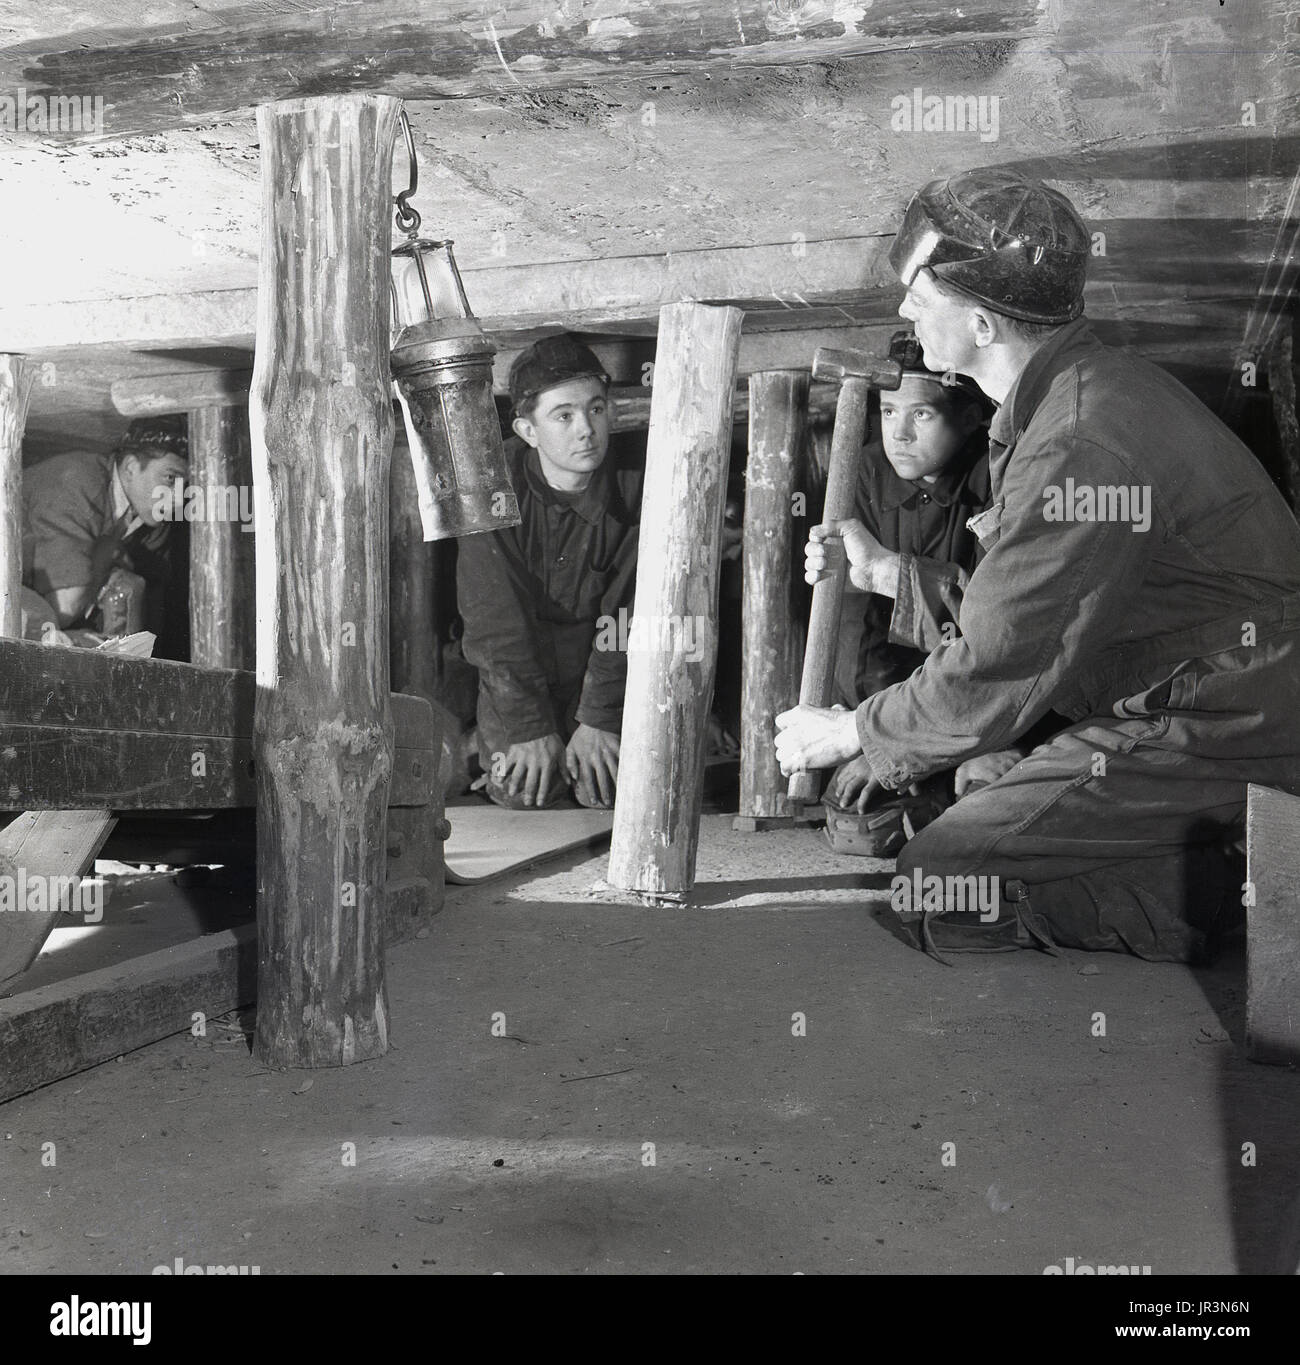 1948, storico, UK, adulti minatore di carbone che mostra i giovani apprendisti di data mining o apprendisti come montanti di legno dovrebbe essere utilizzata in una miniera sotterranea per sostenere la struttura del tetto. Foto Stock